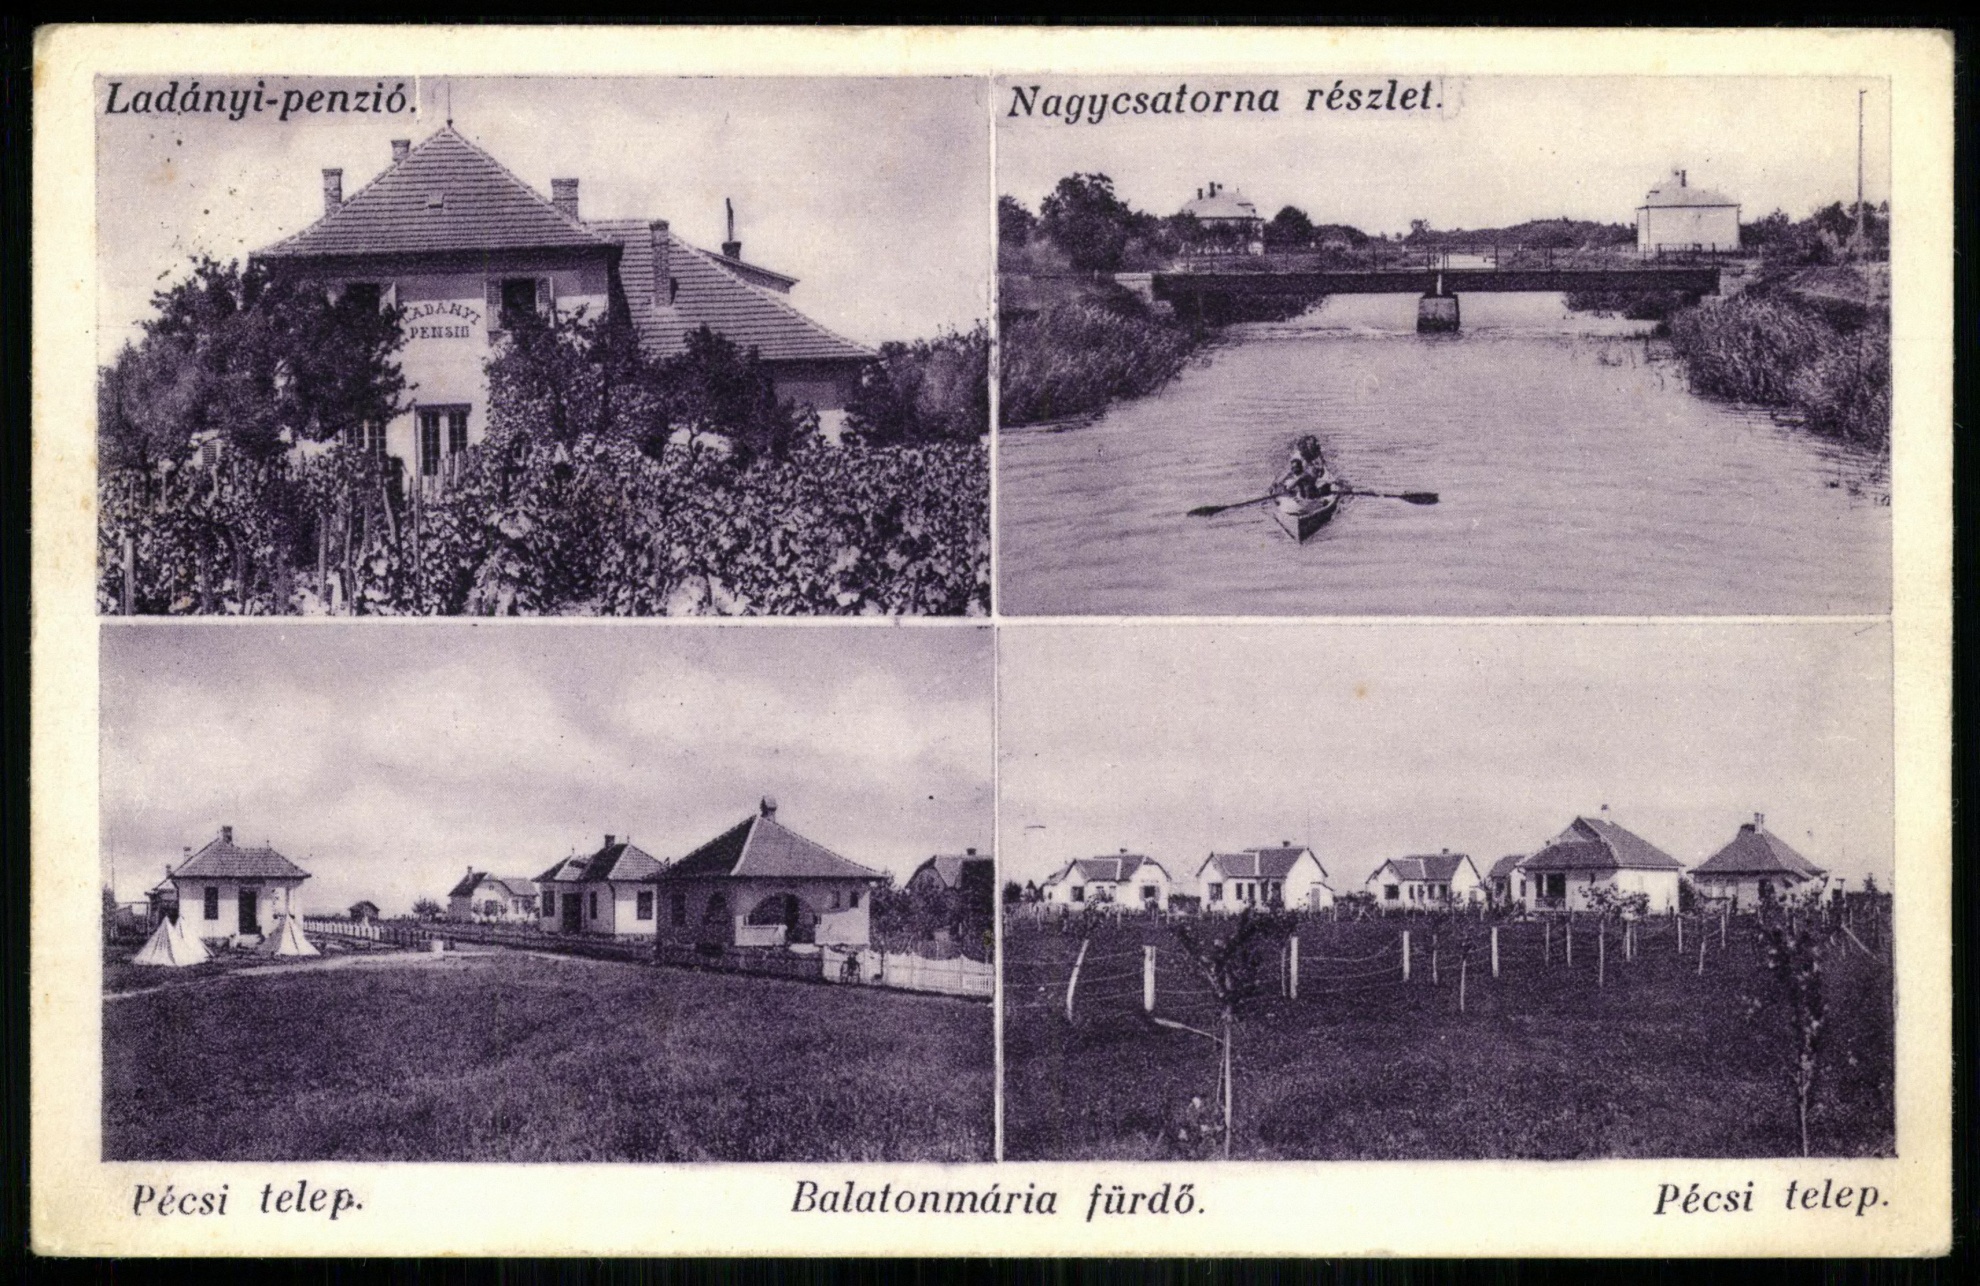 Balatonmária-fürdő Ladányi-penzió, Nagycsatorna részlet, Pécsi telep, Pécsi telep (Magyar Kereskedelmi és Vendéglátóipari Múzeum CC BY-NC-ND)